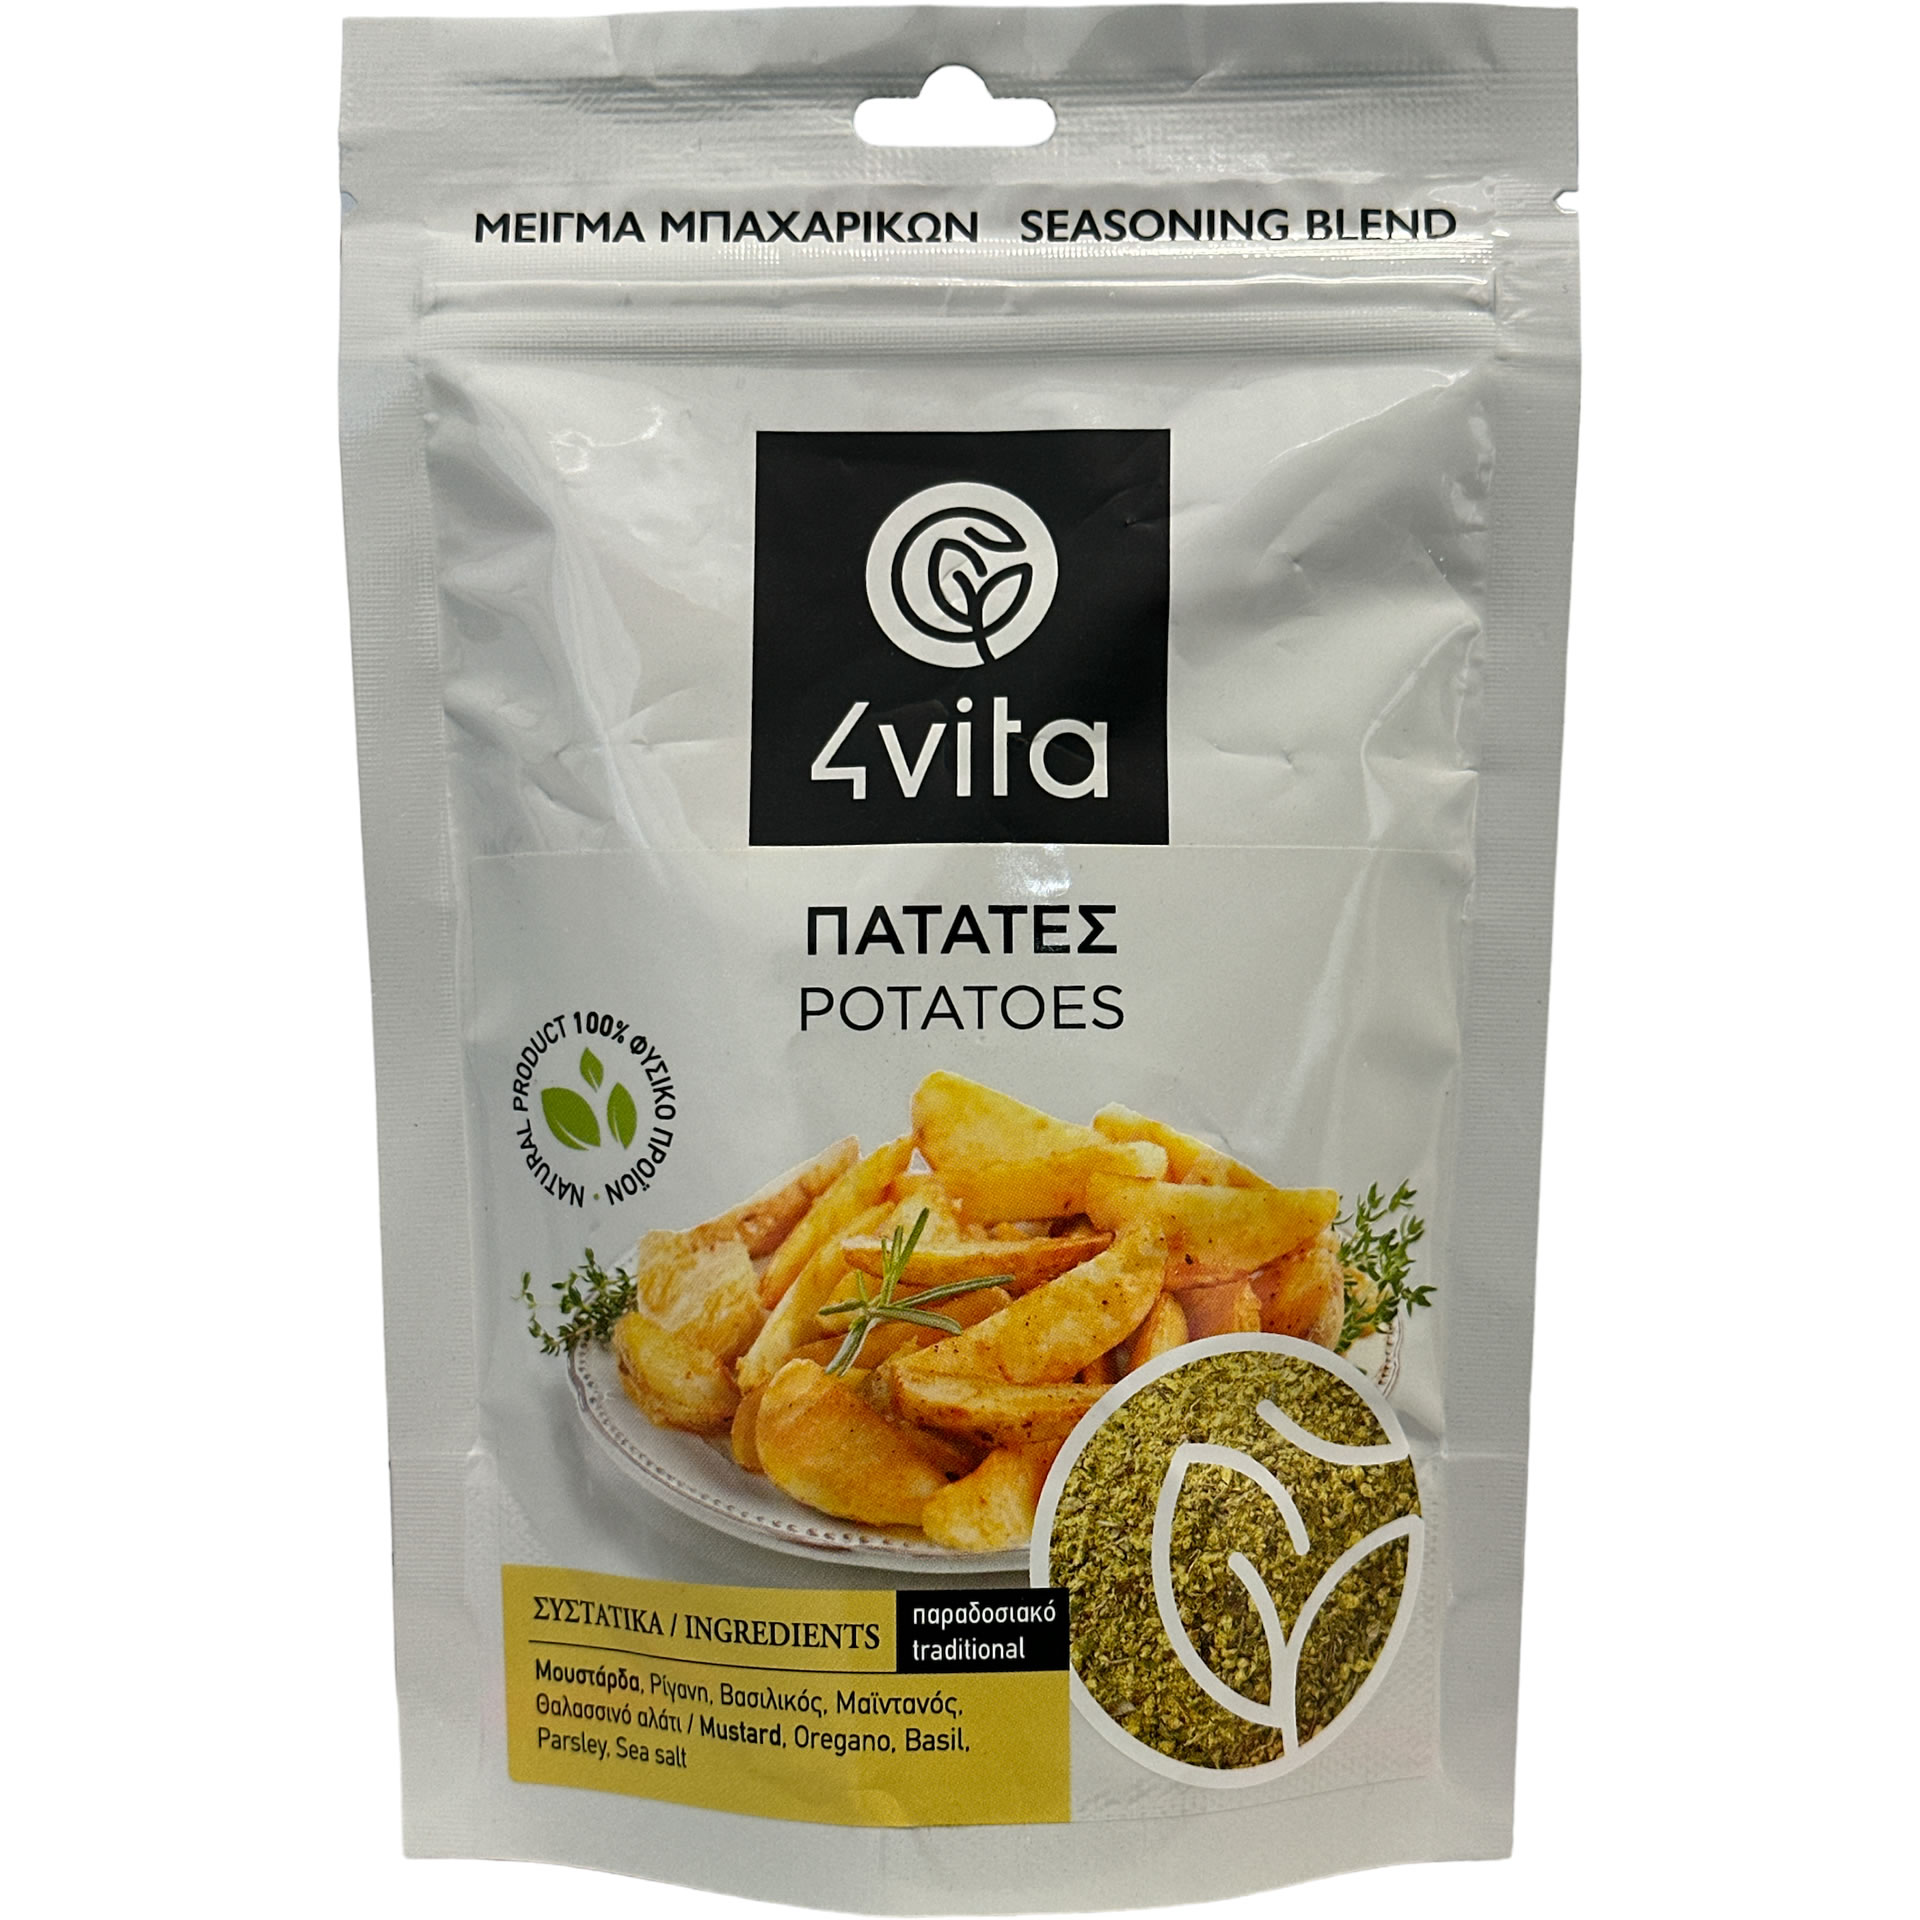 Kartoffel-Gewürzmischung 75 g - 4vita